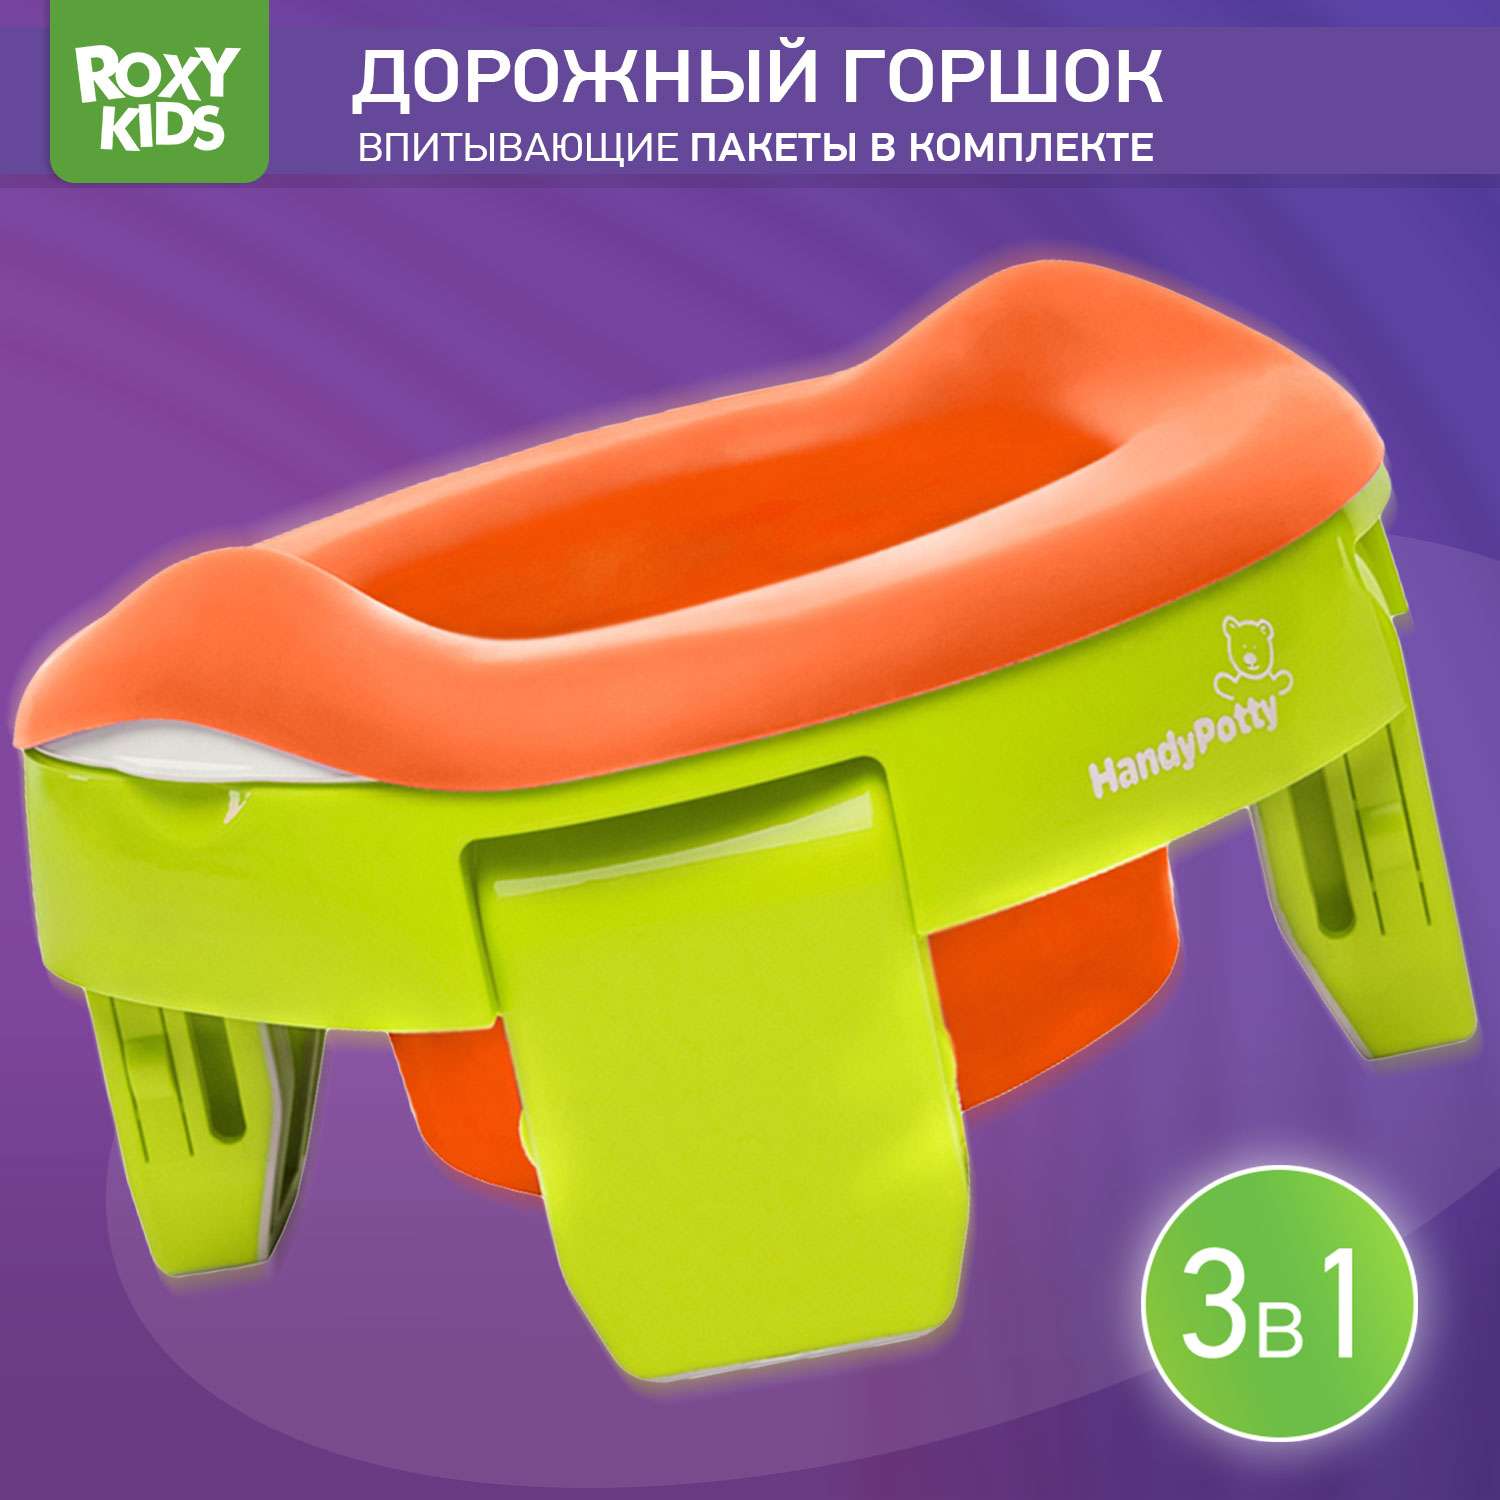 Горшок дорожный ROXY-KIDS складной с многоразовой вкладкой HandyPotty 3 в 1 цвет лайм/оранжевый - фото 1